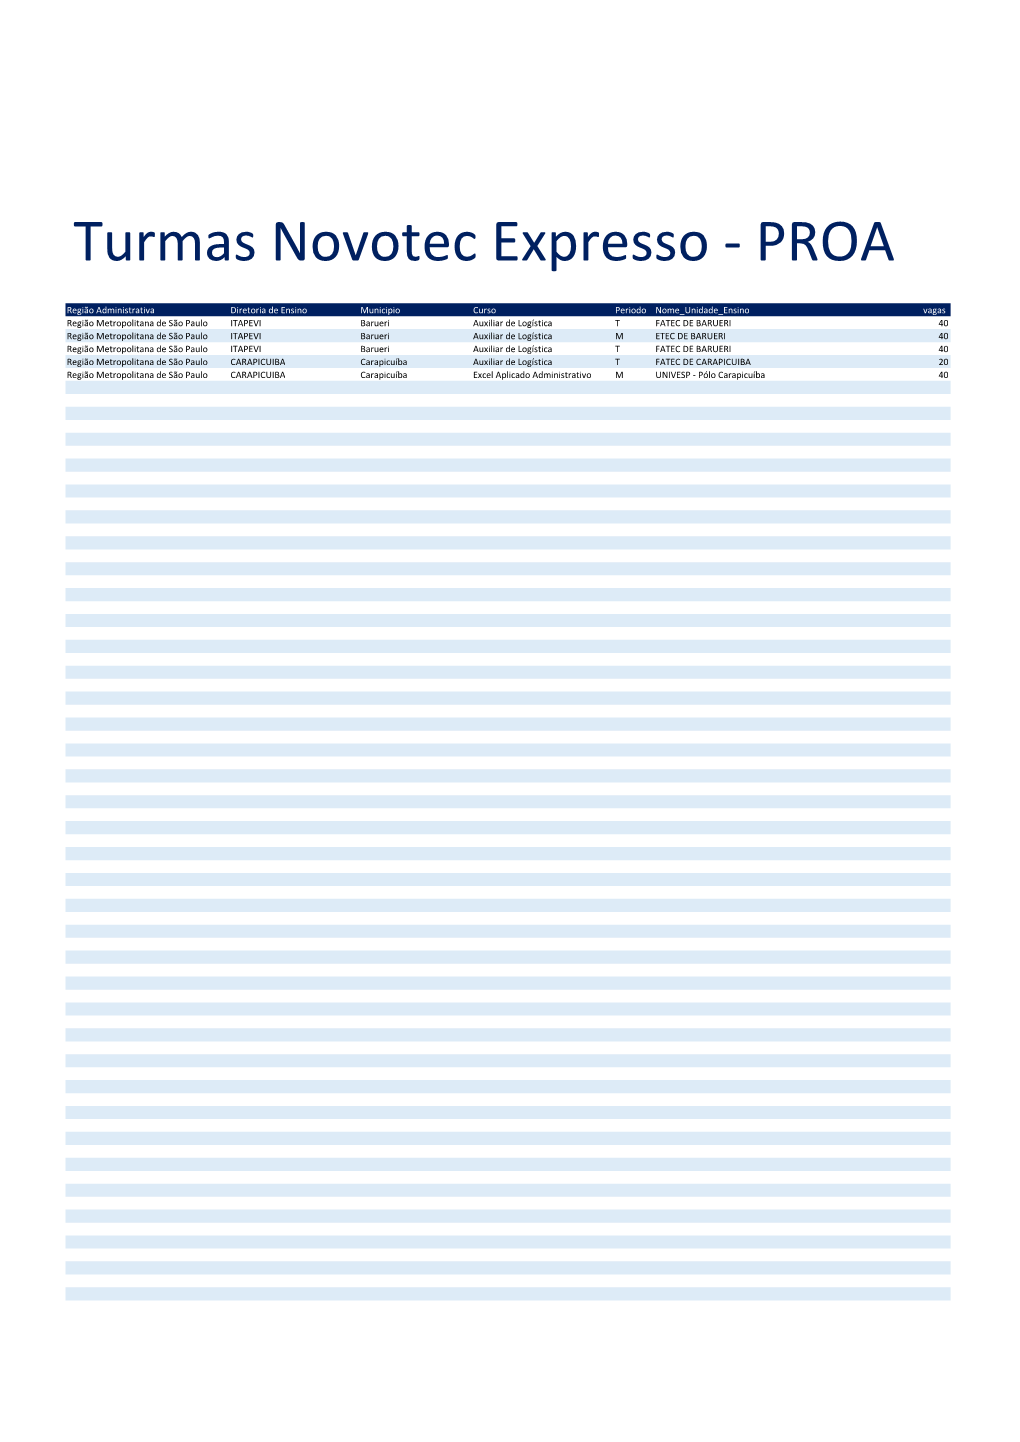 Turmas Novotec Expresso - PROA